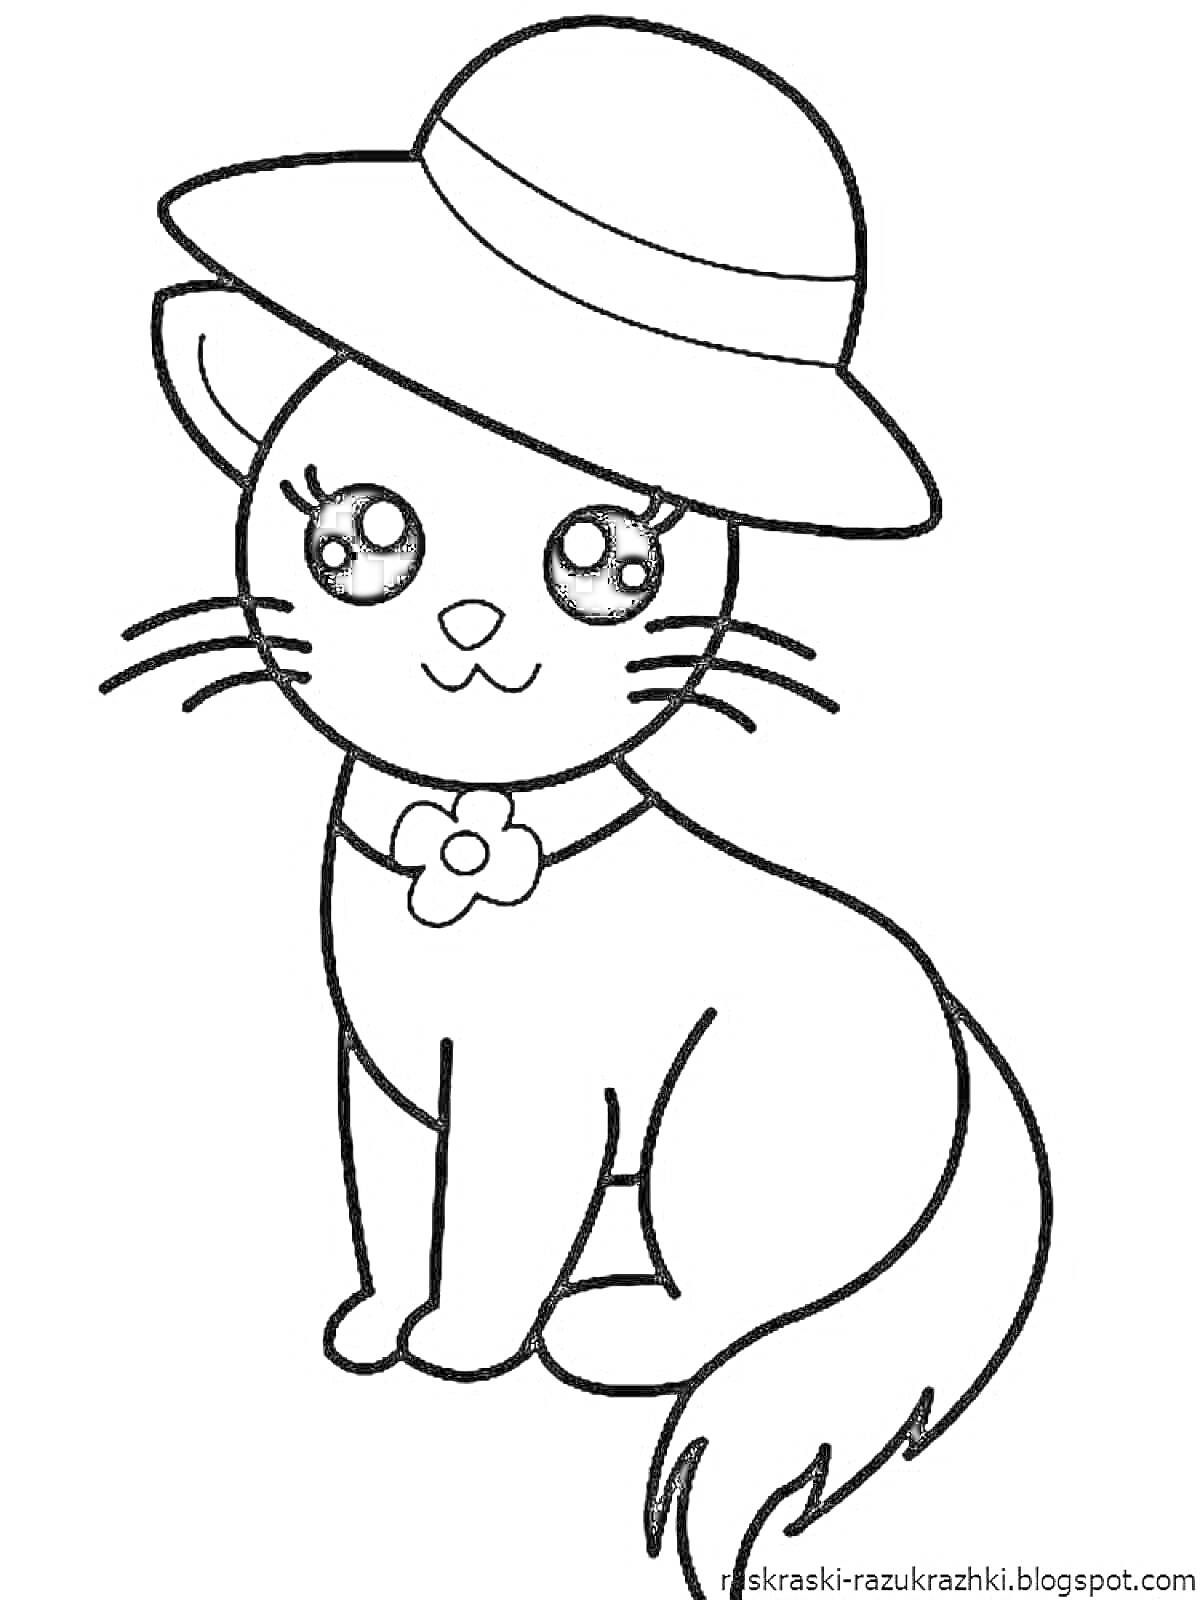 Раскраска Кошка в шляпе с цветком на ошейнике